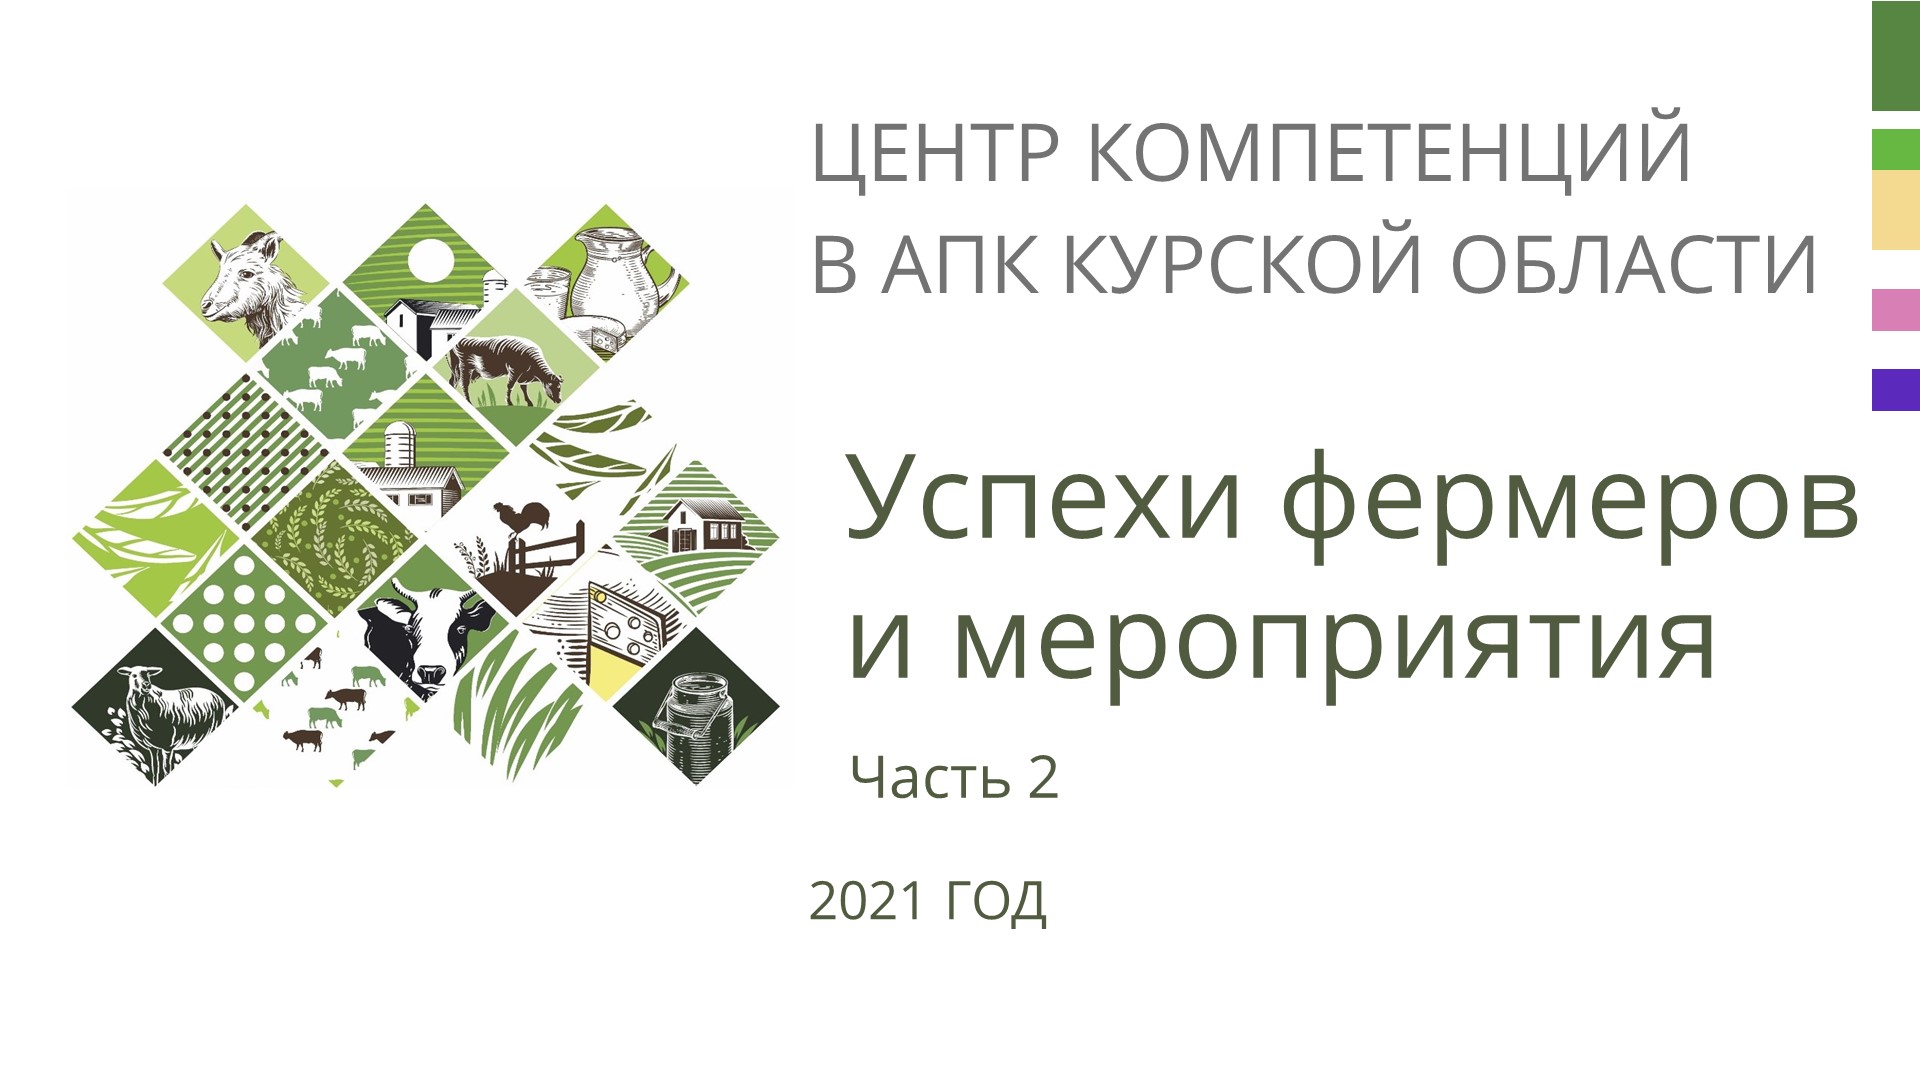 Работа Центра компетенций в АПК Курской области за 2021 год